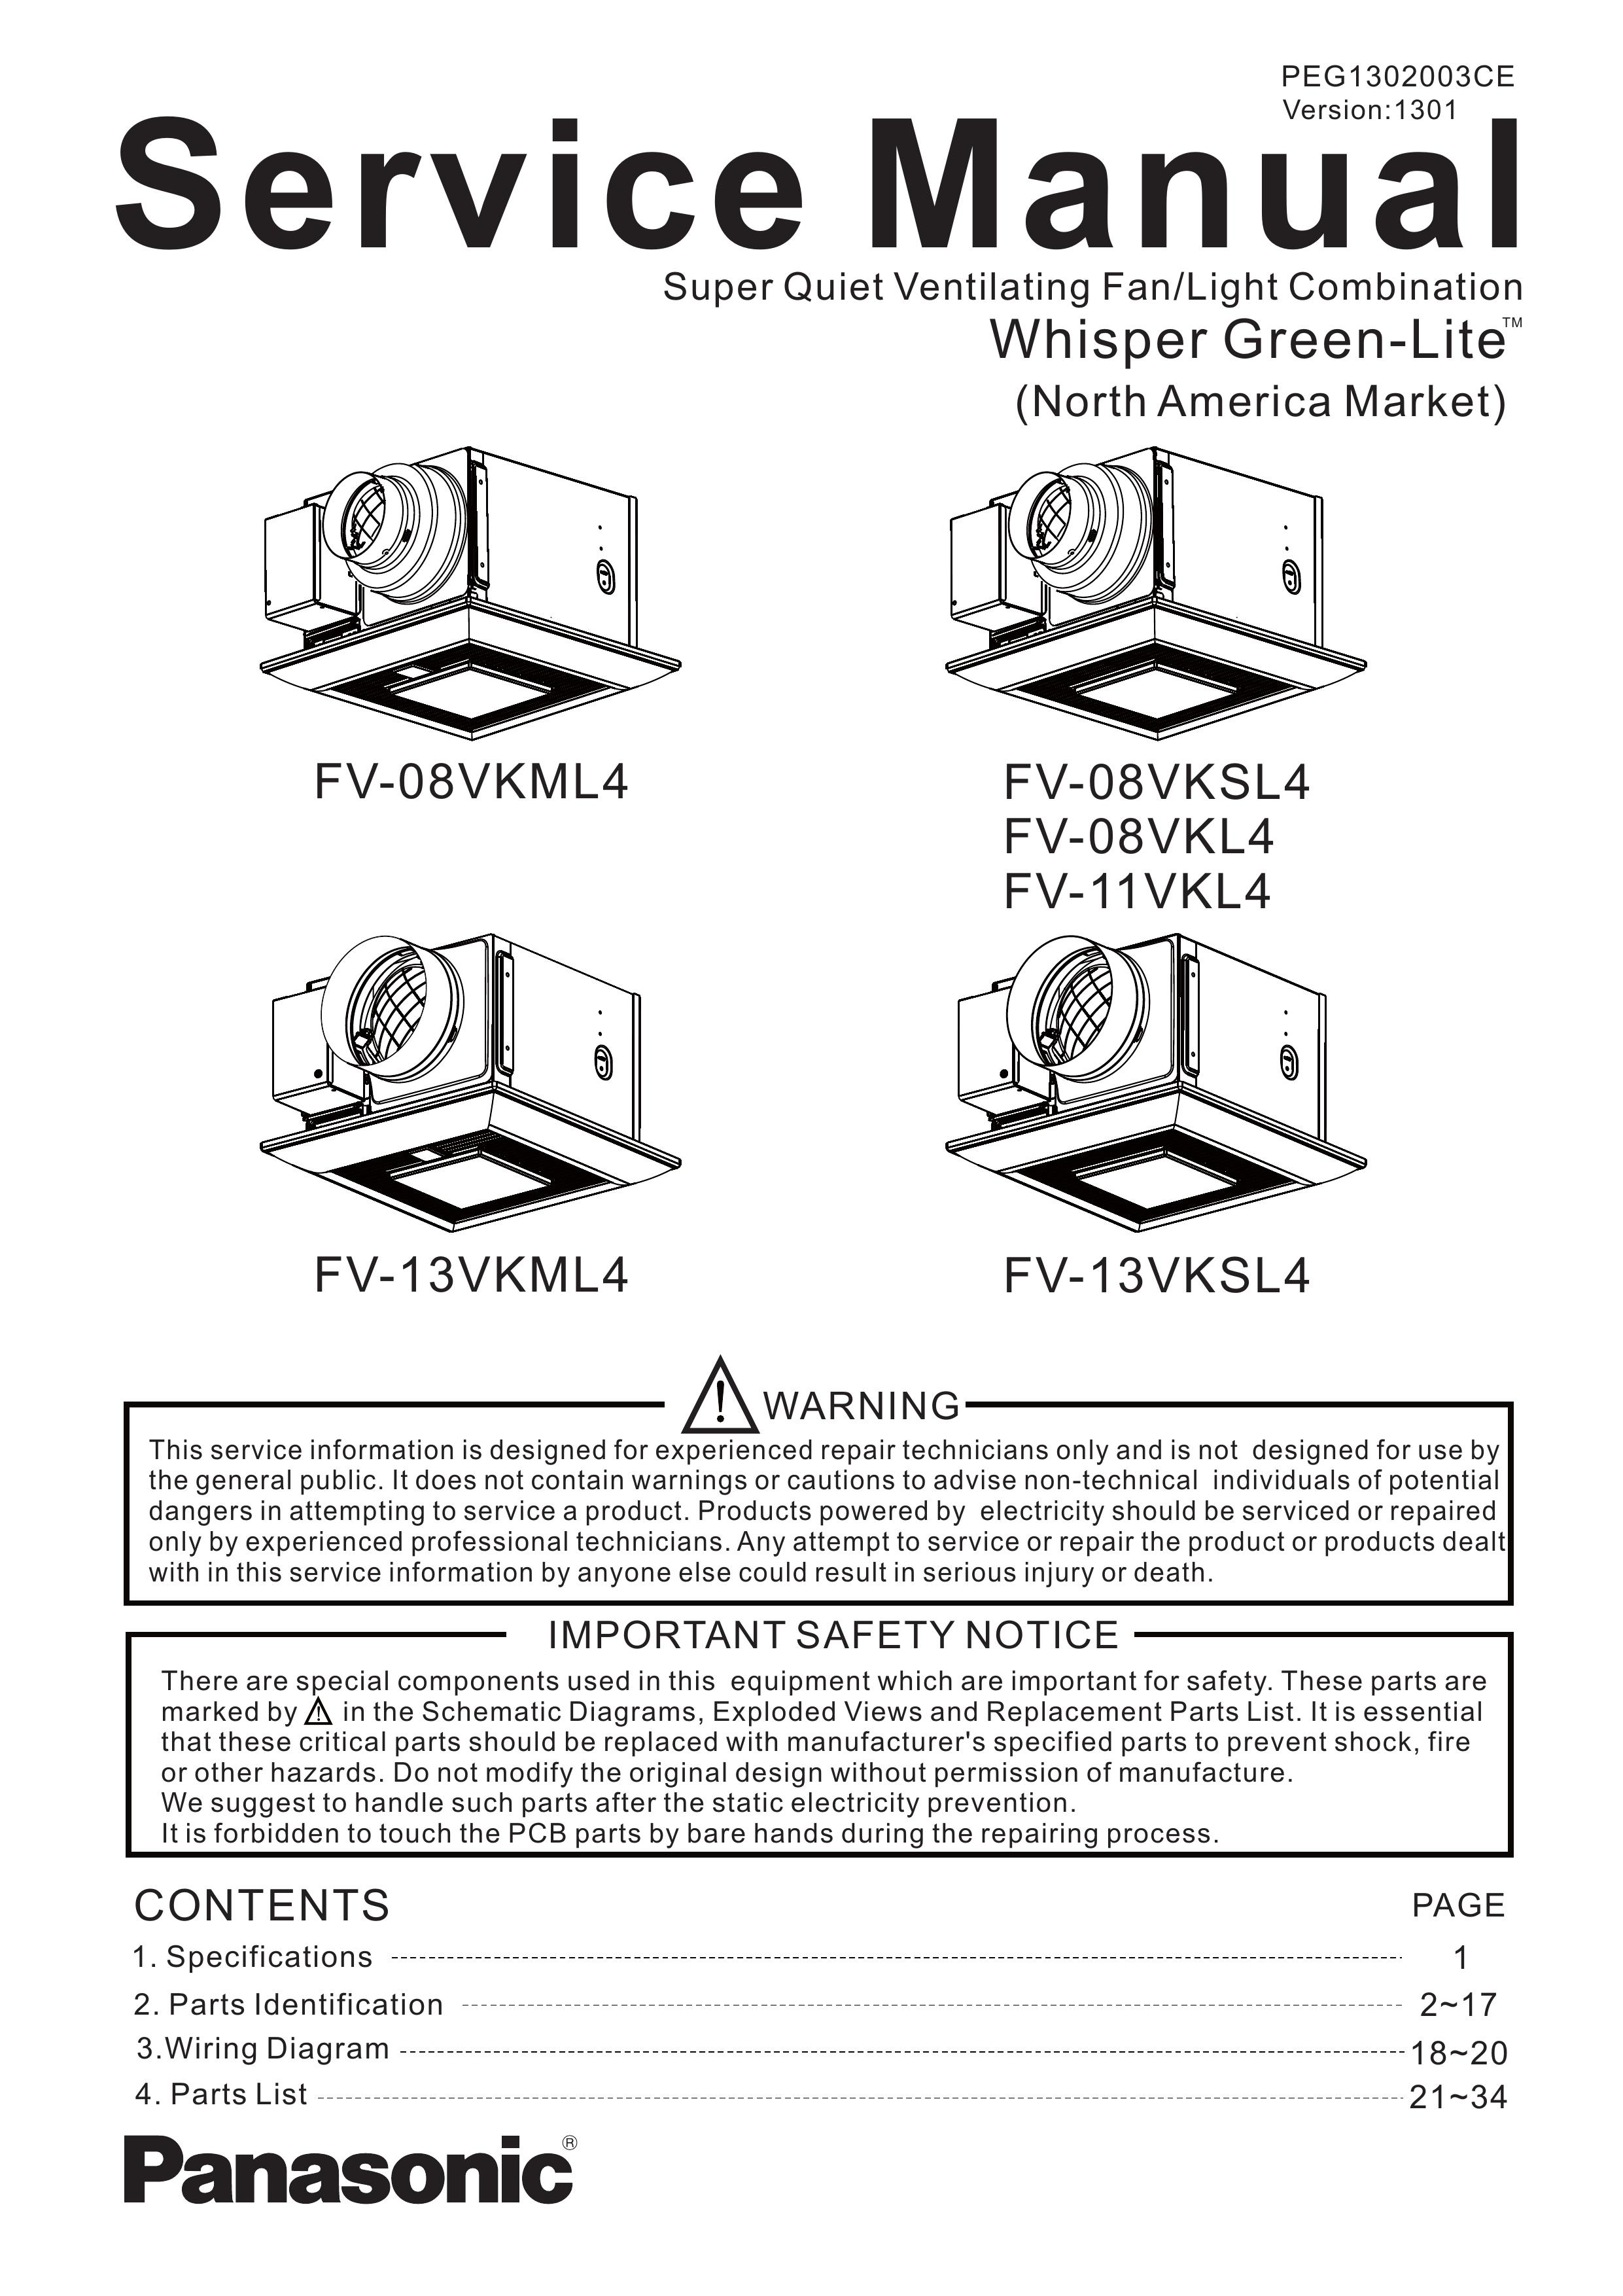 Panasonic FV-11VKL4 Ventilation Hood User Manual